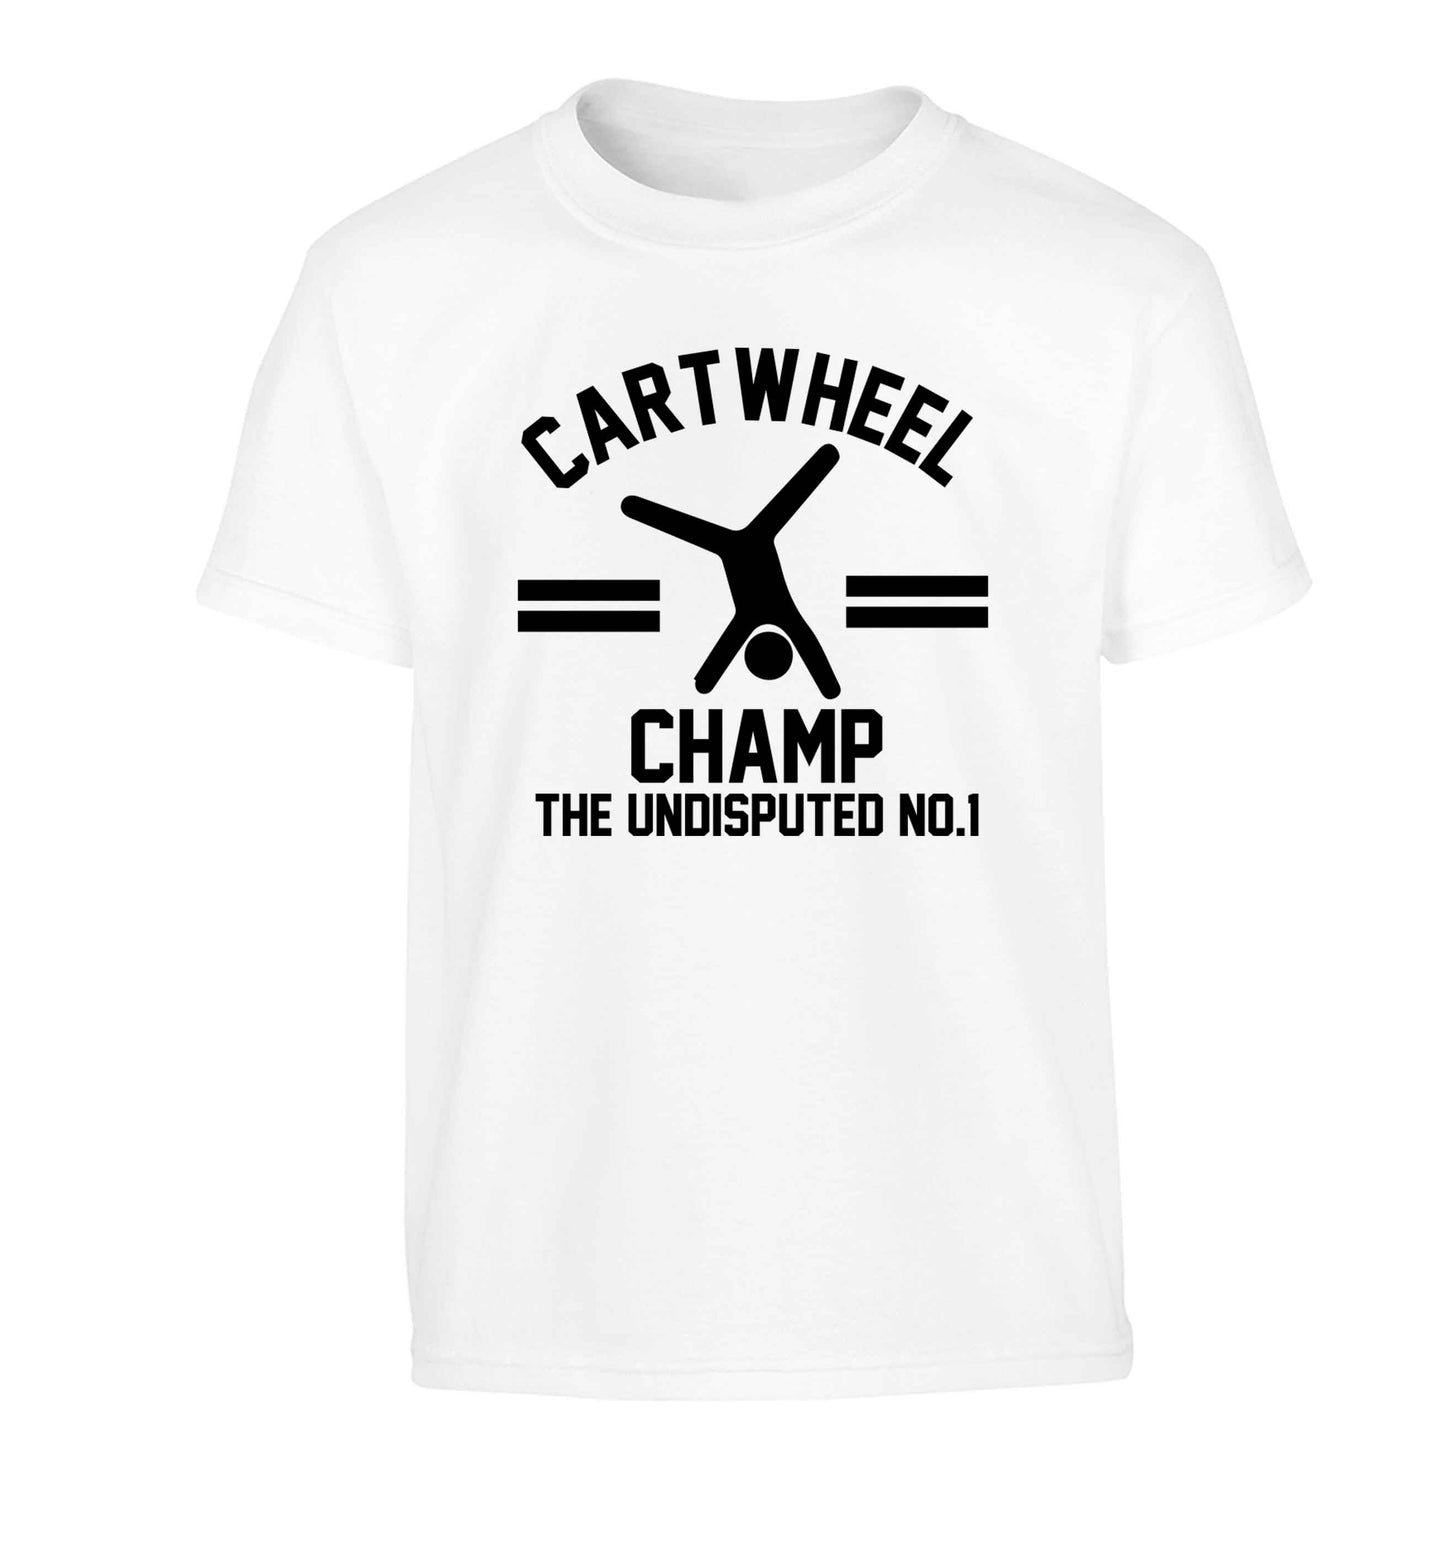 Undisputed cartwheel championship no.1  Children's white Tshirt 12-13 Years